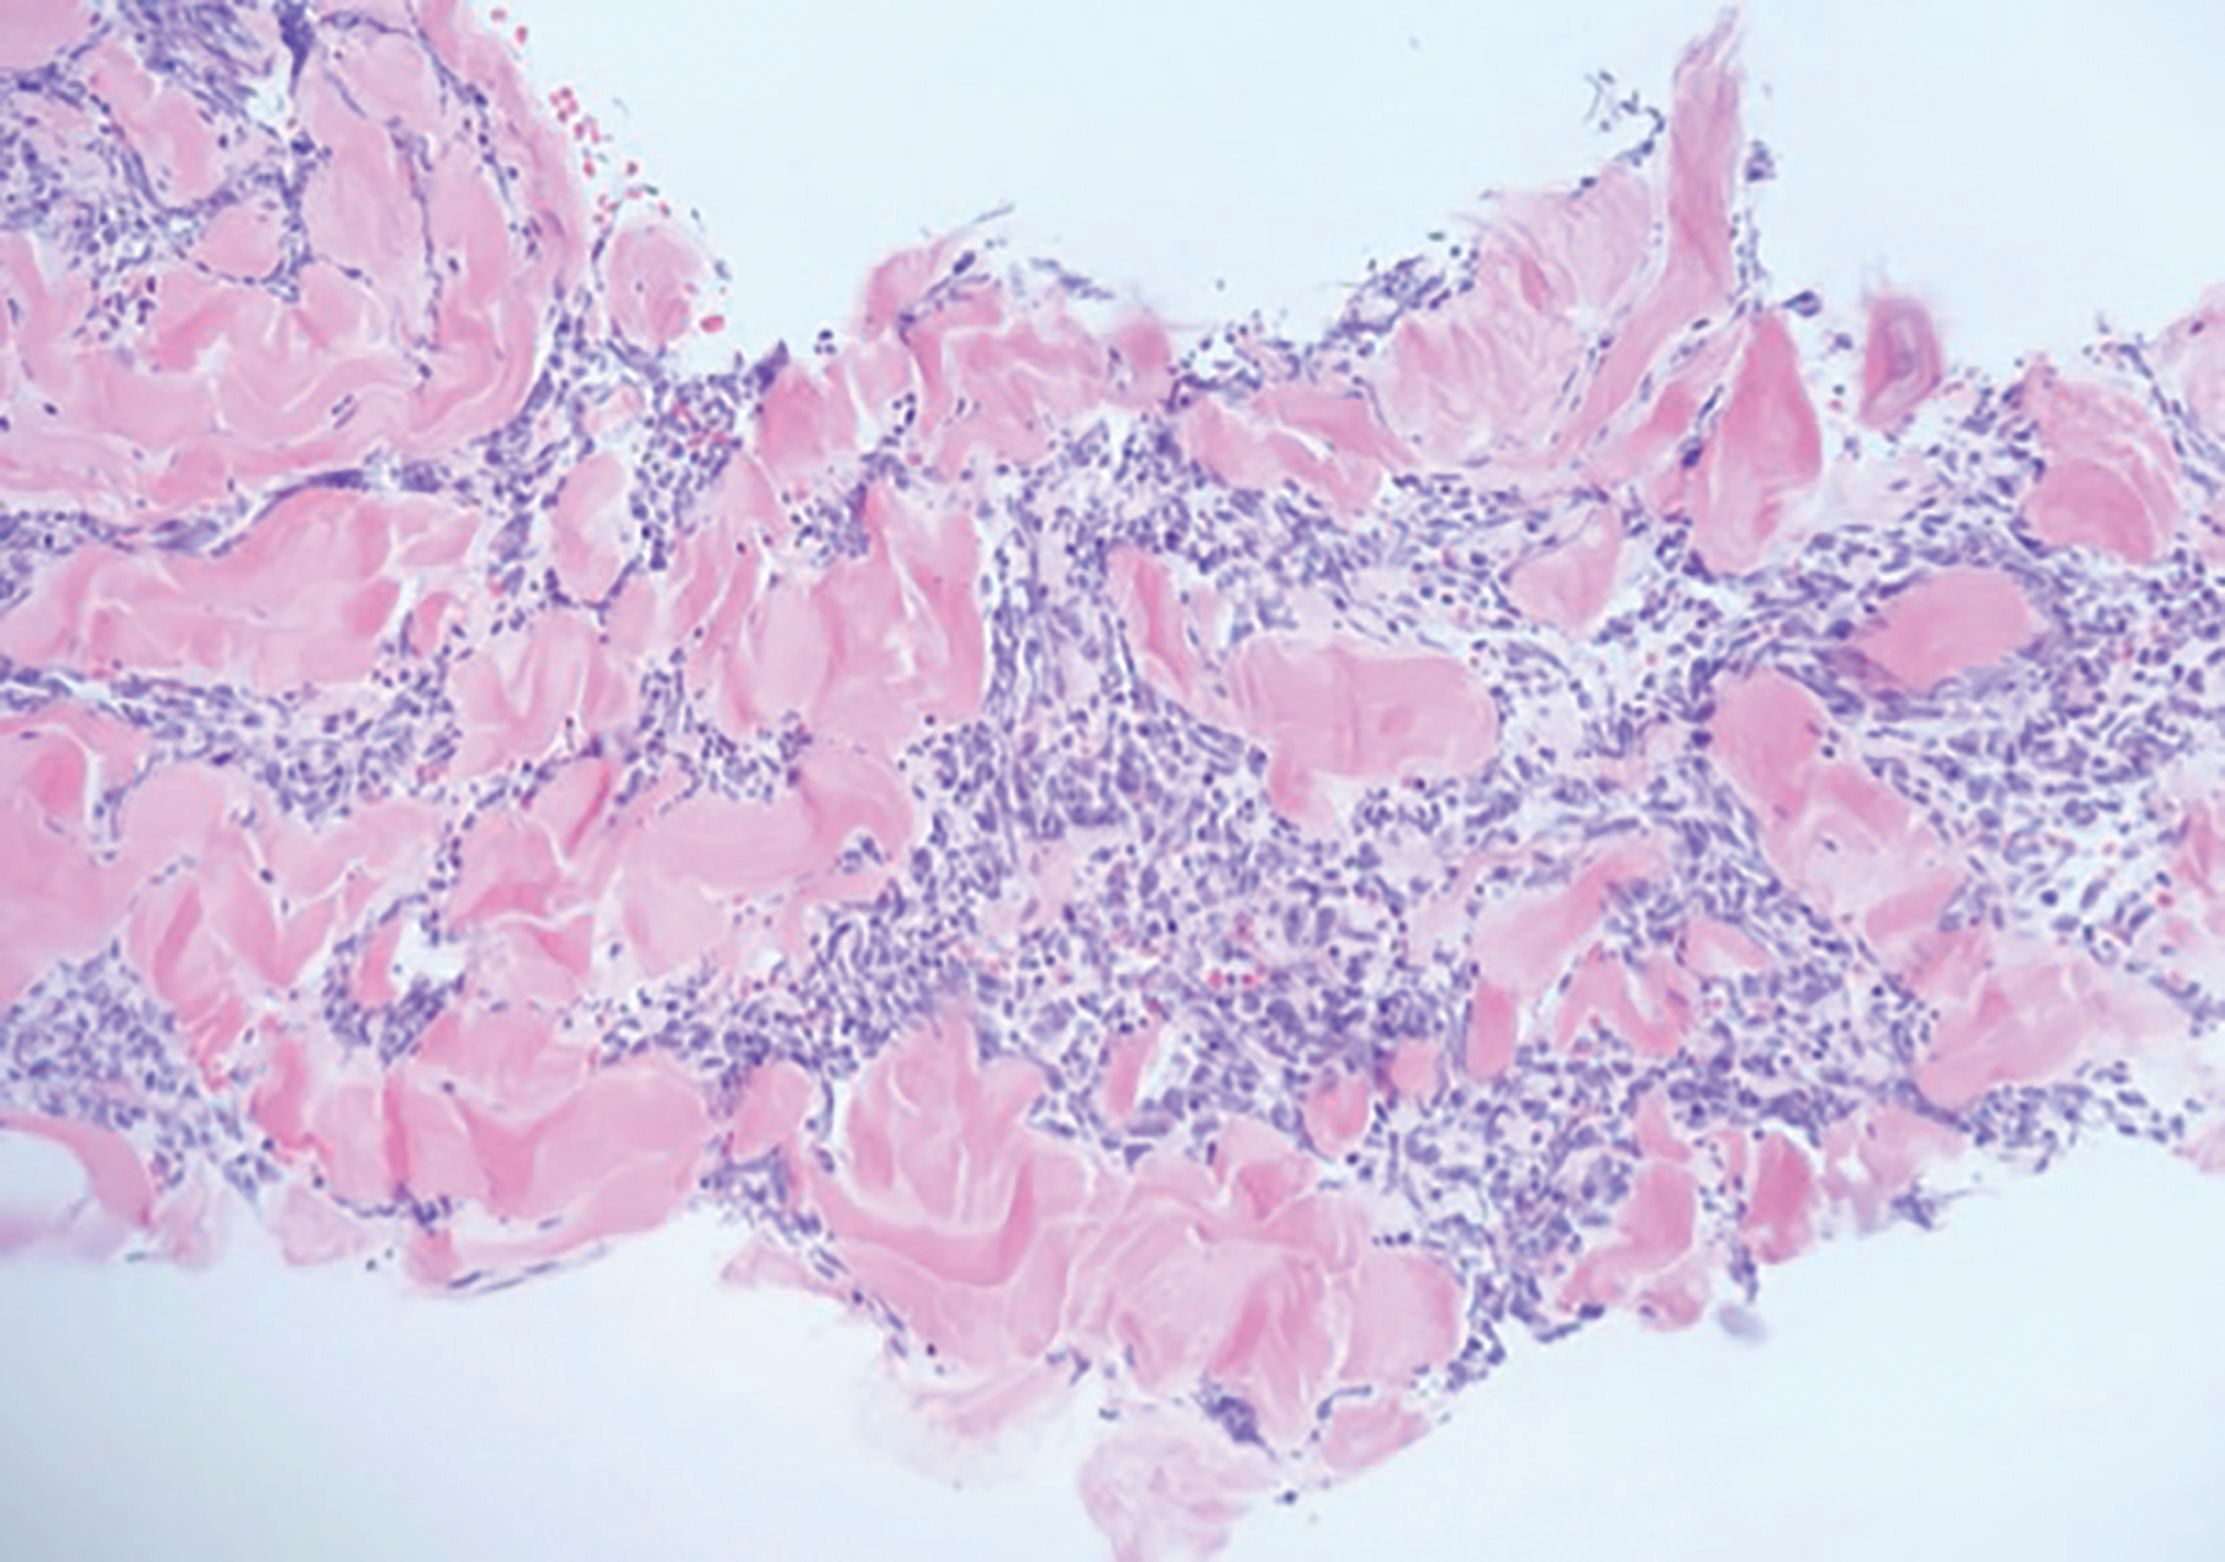 三阴性乳腺癌的分子及免疫标记特征 - 乳腺肿瘤学 - 天山医学院